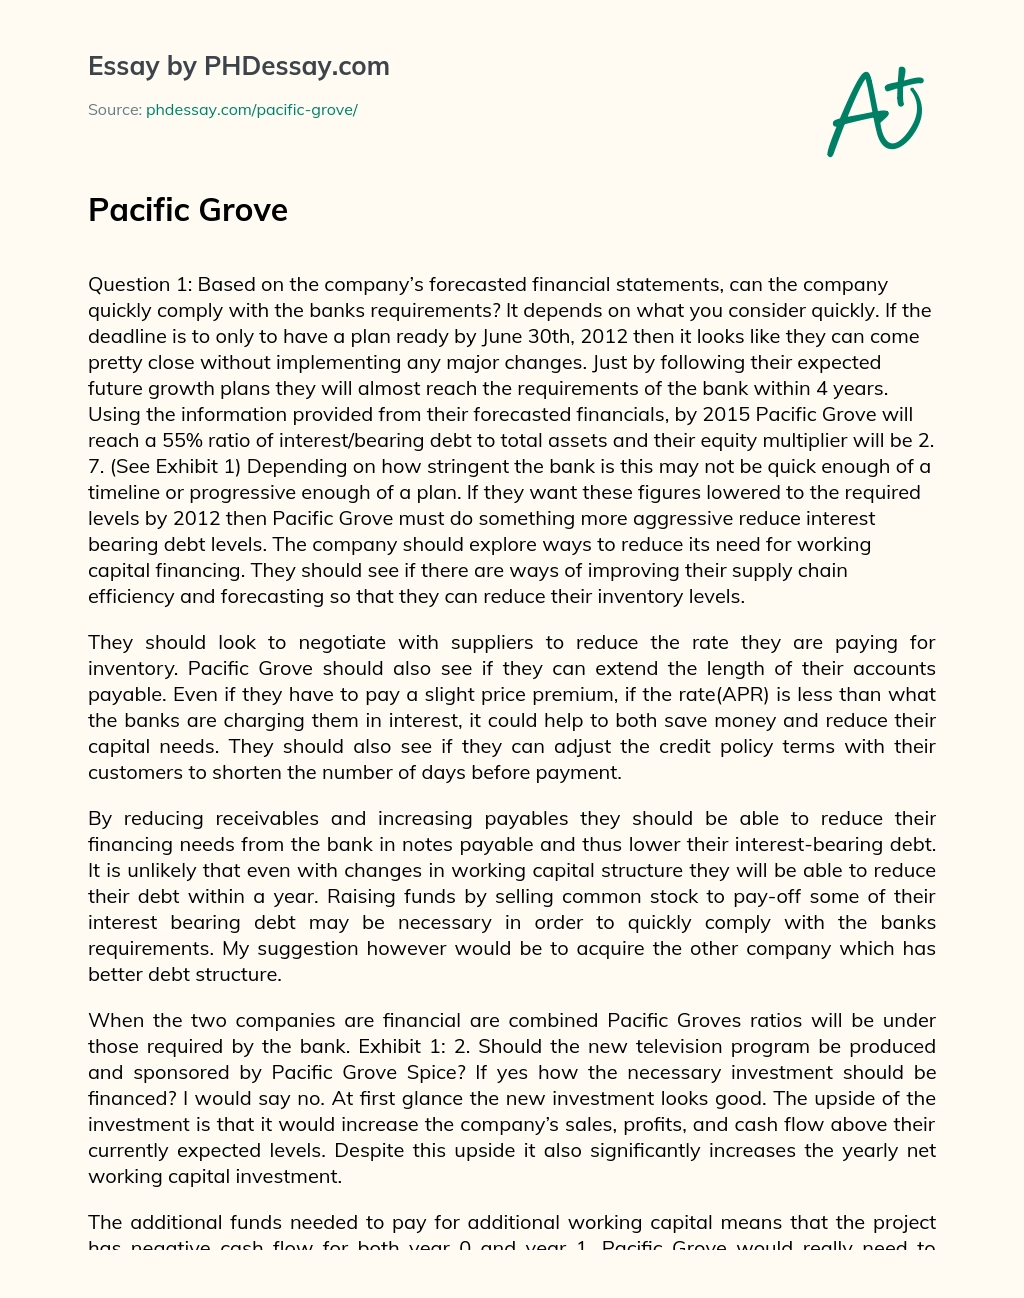 Pacific Grove essay